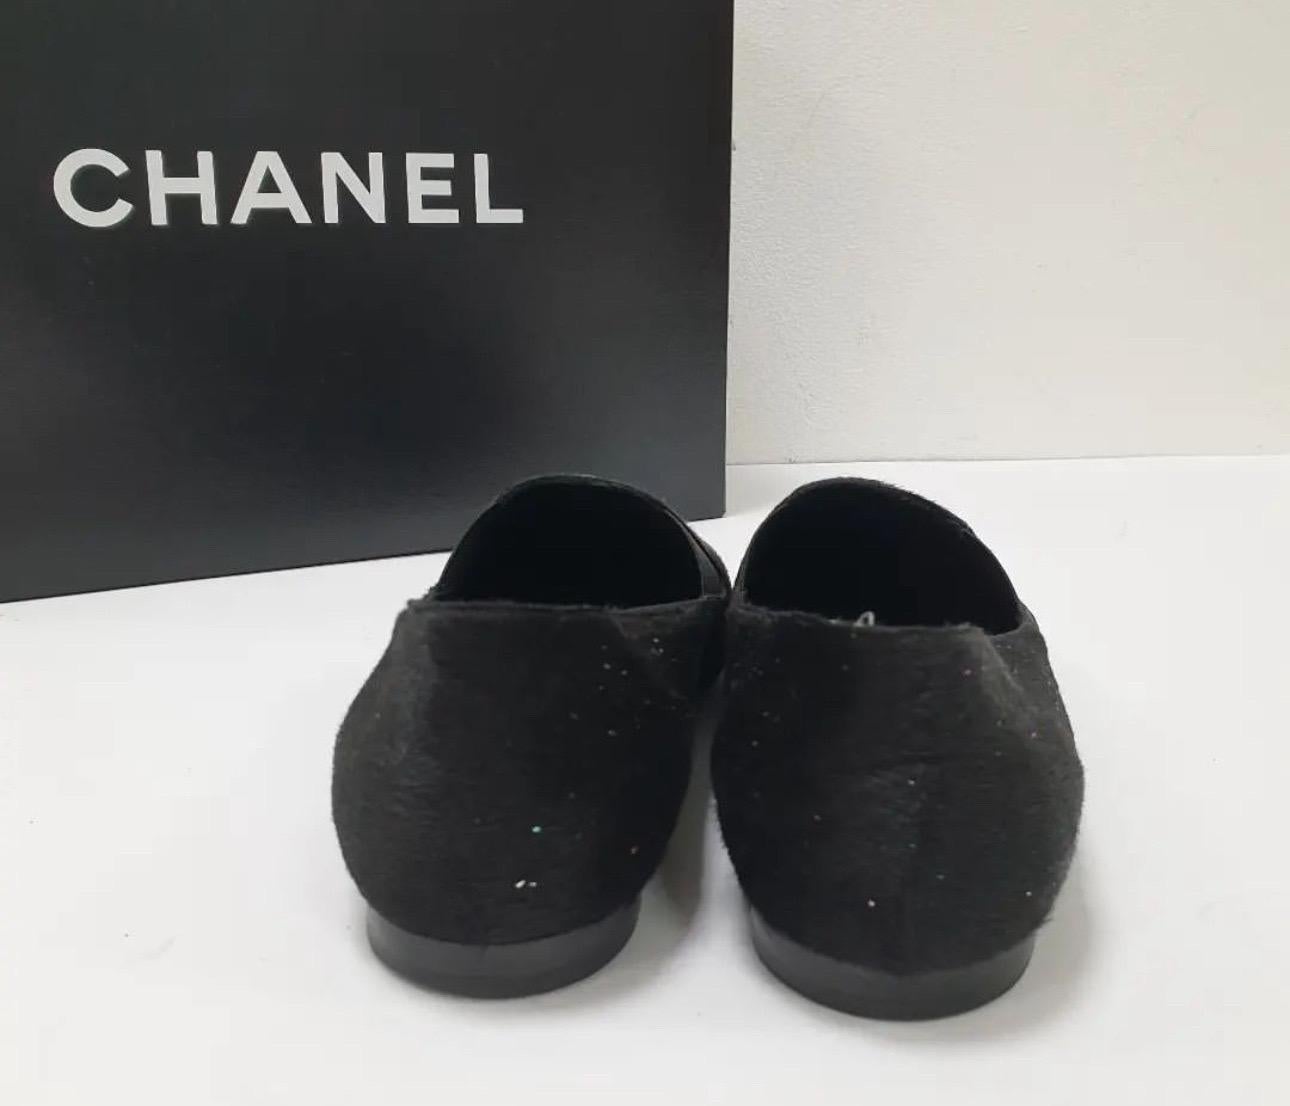 Mocassins Chanel CC en taille 37.5

- Fourrure de poney noire

- Logo Chanel sur la pointe des orteils en argent

- Elastique autour du souffle de la chaussure pour plus de confort

Très bon état.

Pas de boîte. Pas de sac à poussière.